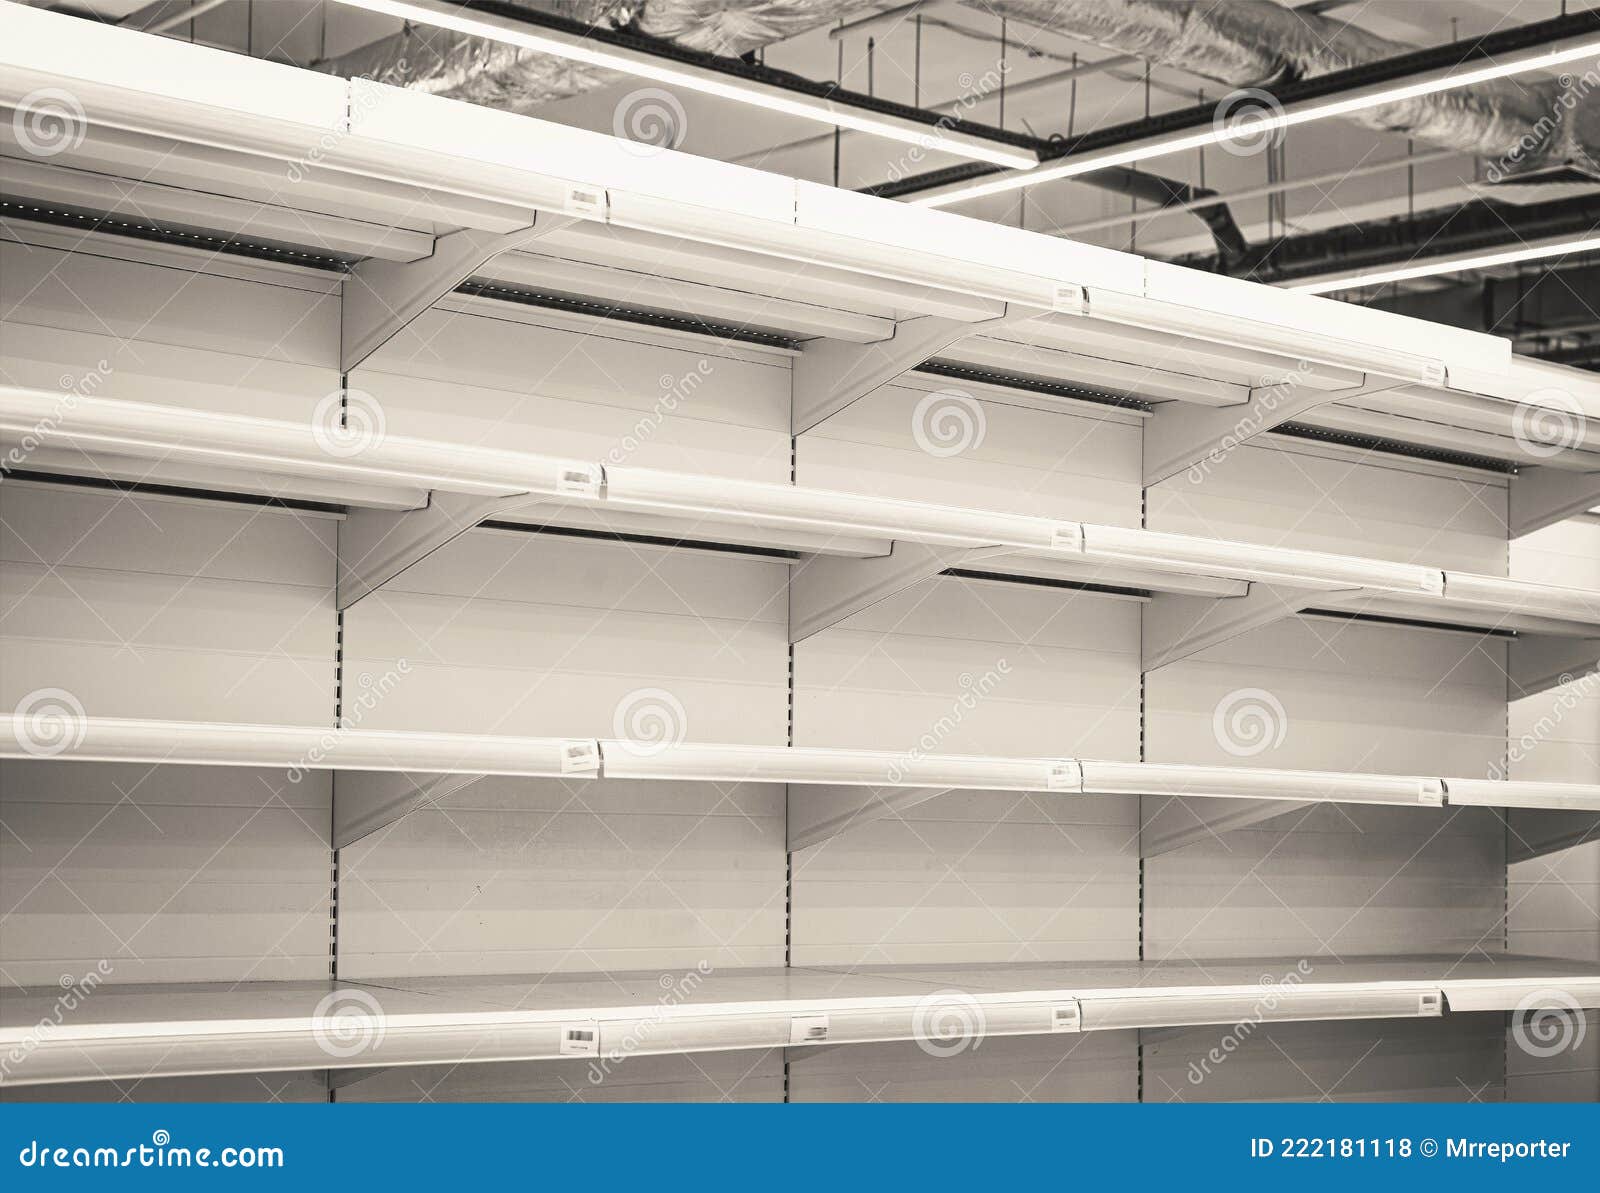 Estantes De Rack Nuevos Vacíos En El Supermercado Foto de archivo - Imagen 222181118